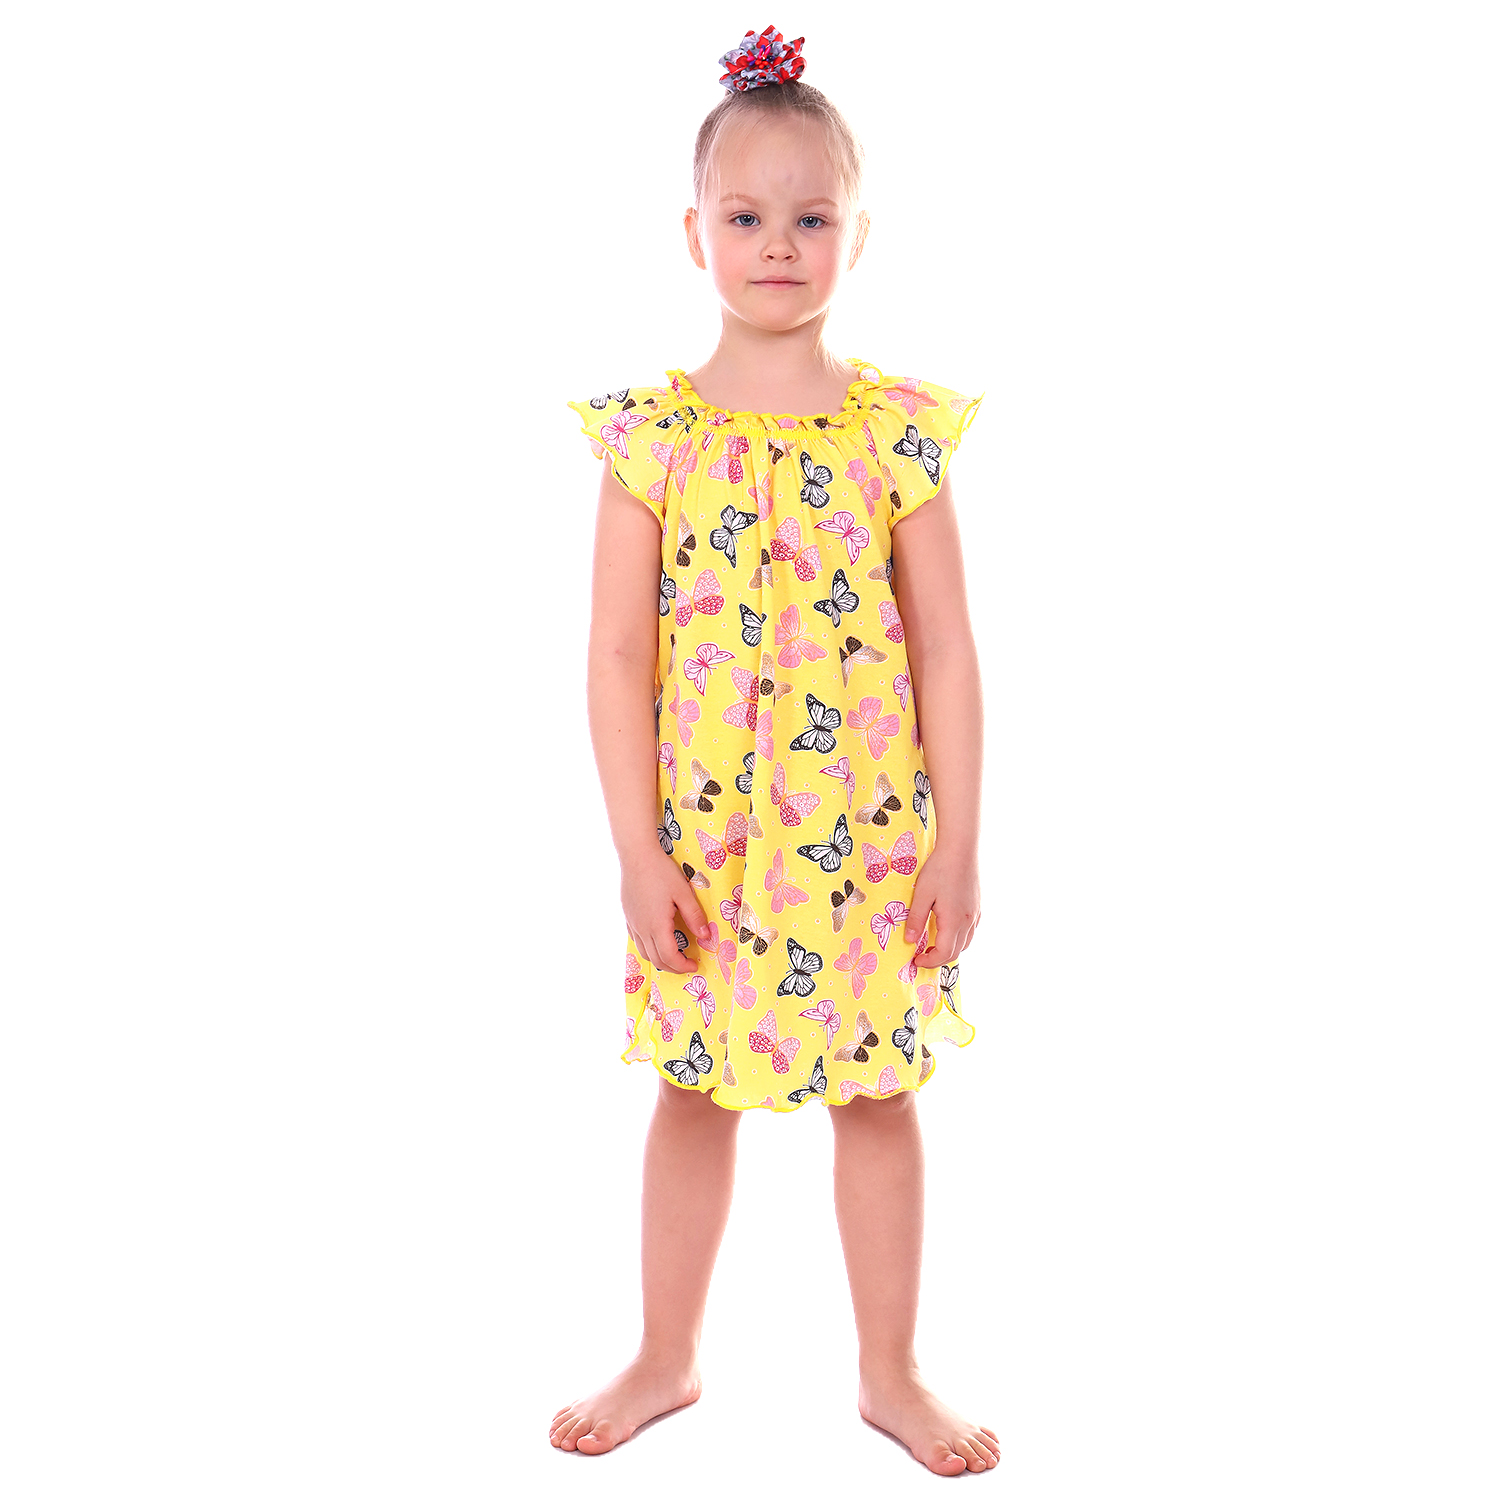 Сорочка ночная Детская Одежда 0003К/желтый2 - фото 2